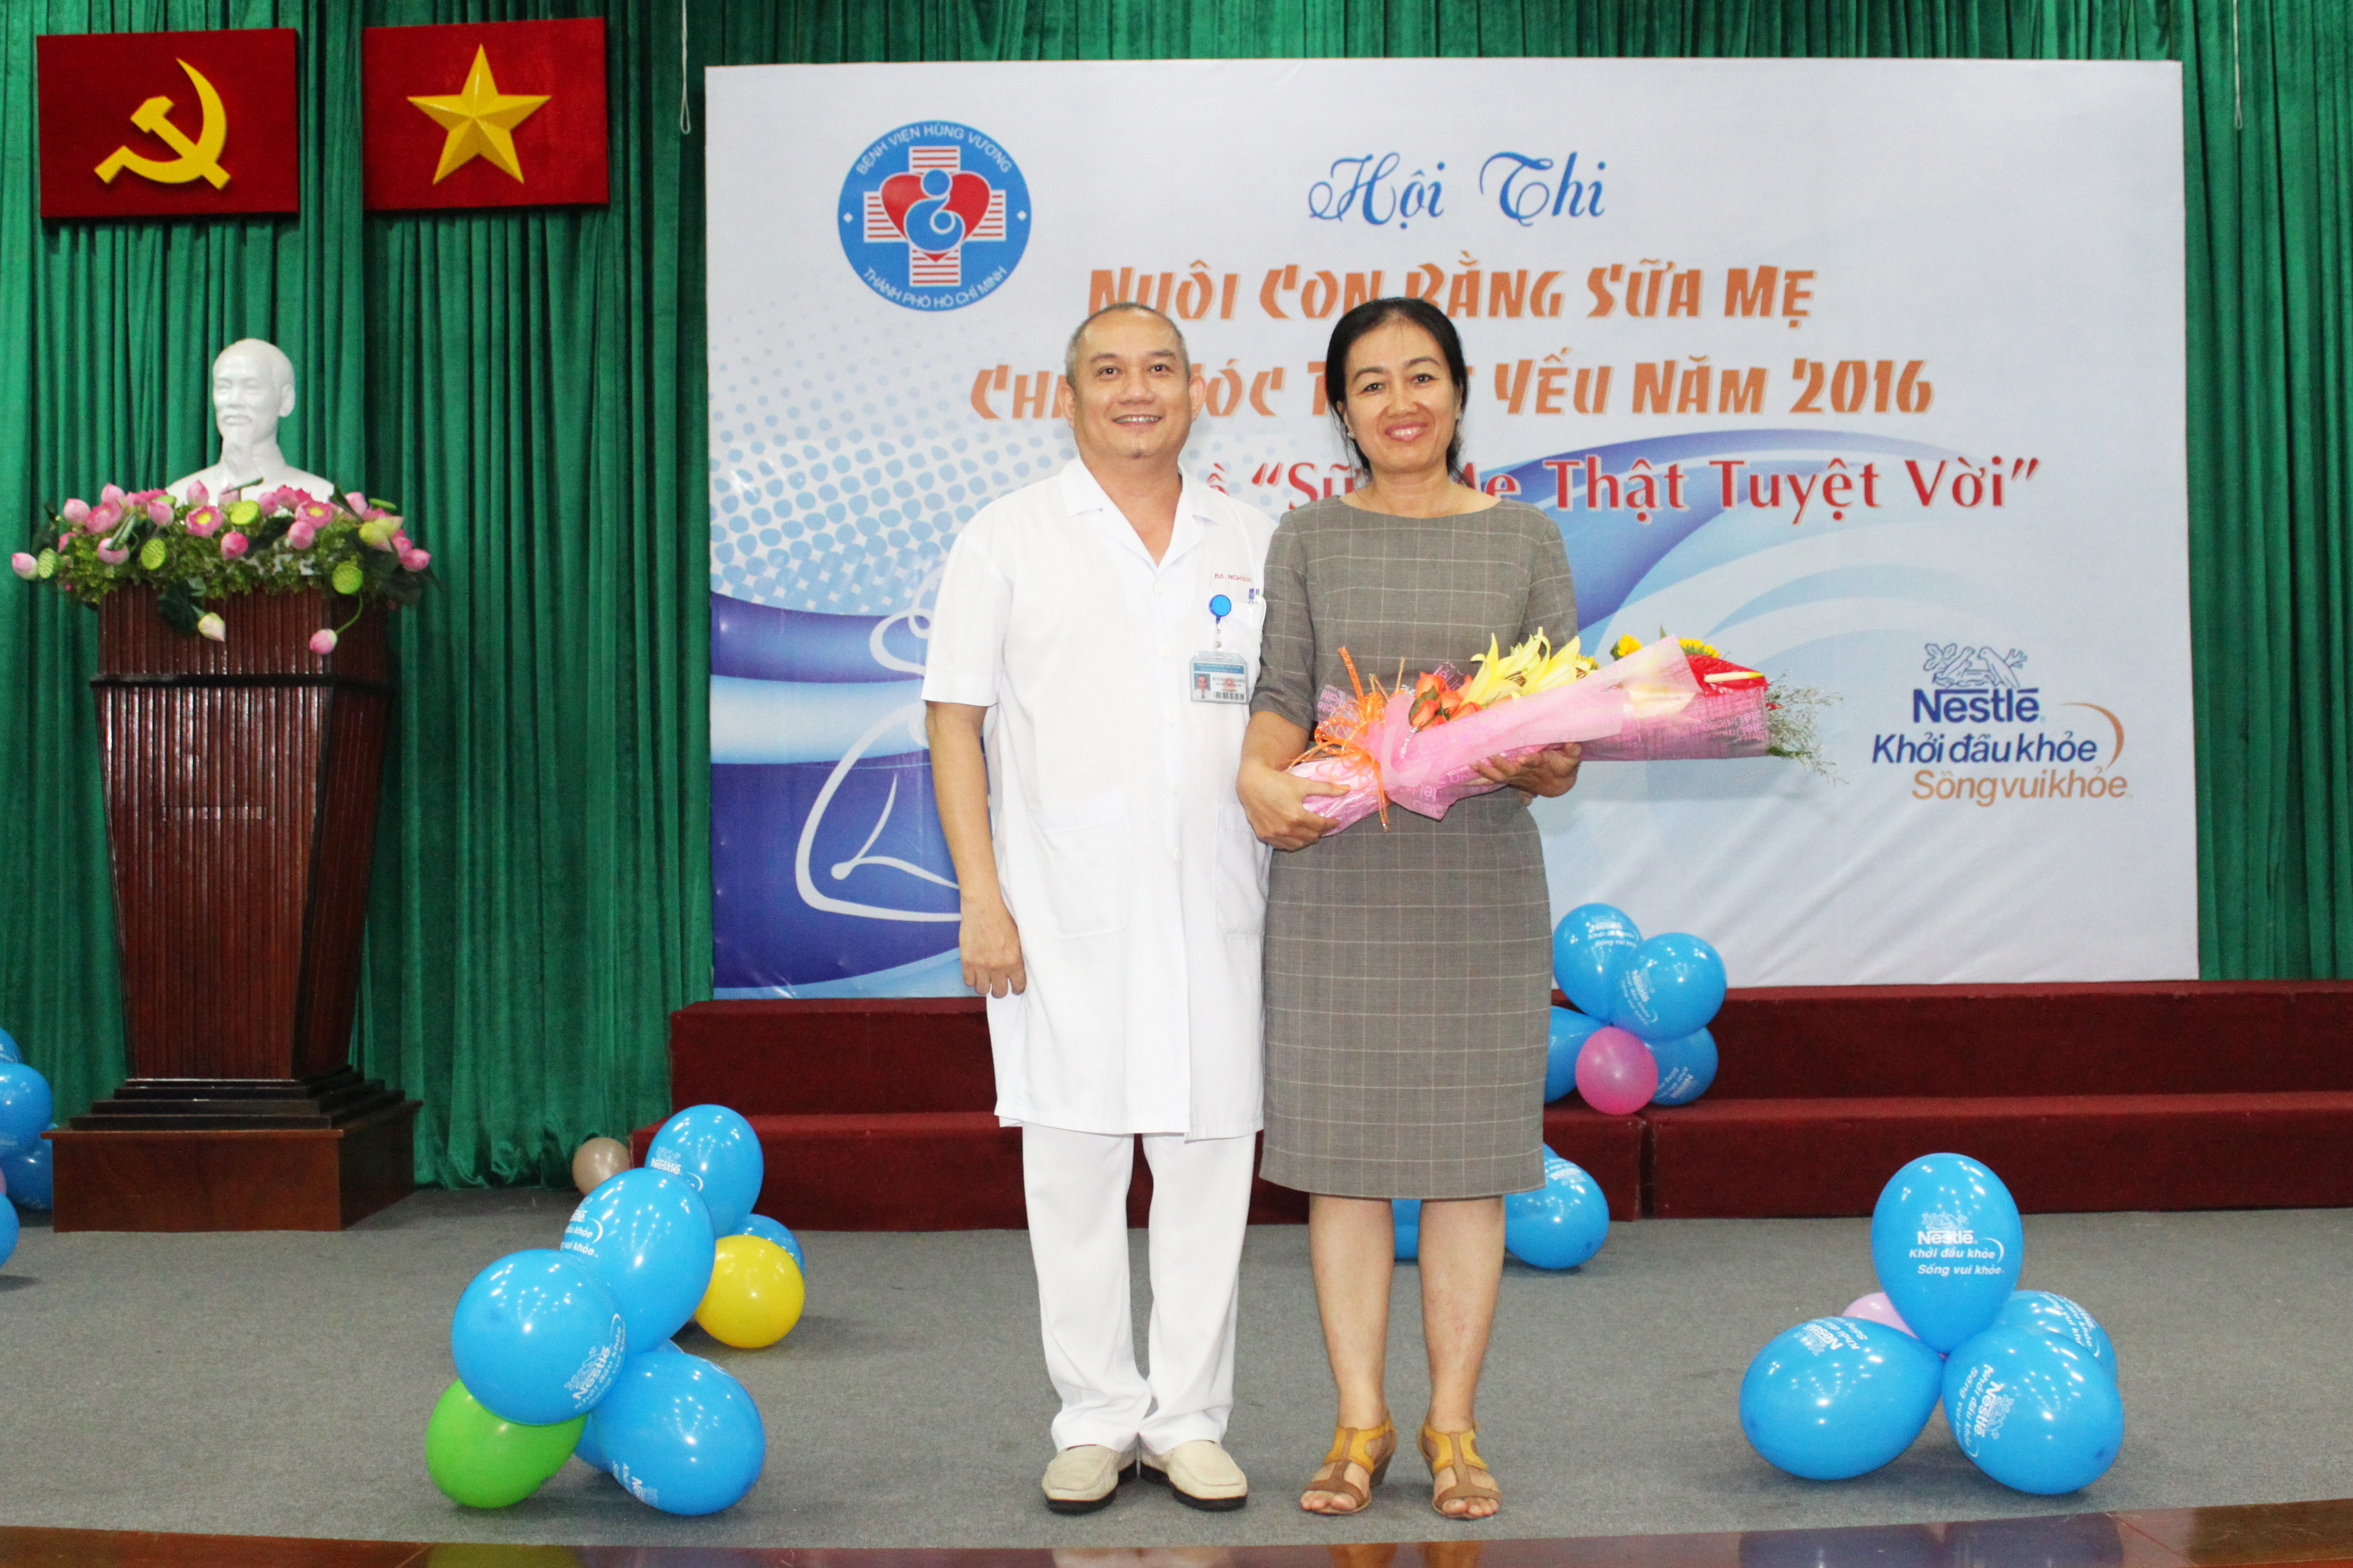 Phòng khám phụ khoa ở quận 5 của bác sĩ Huỳnh Xuân Nghiêm